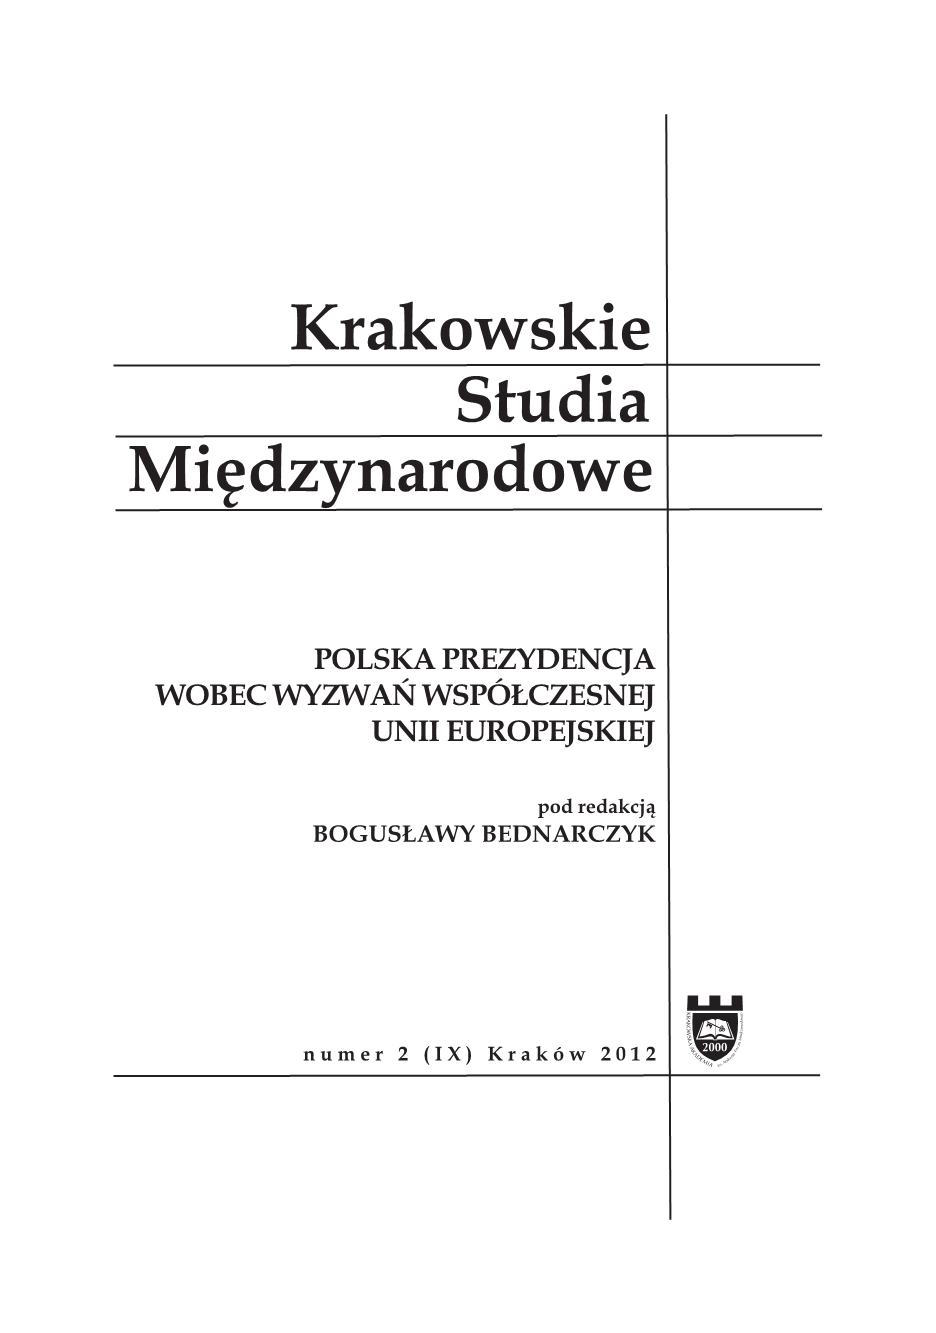 Polska jako europejska agora kultury. Przedsięwzięcia kulturalne polskiej prezydencji